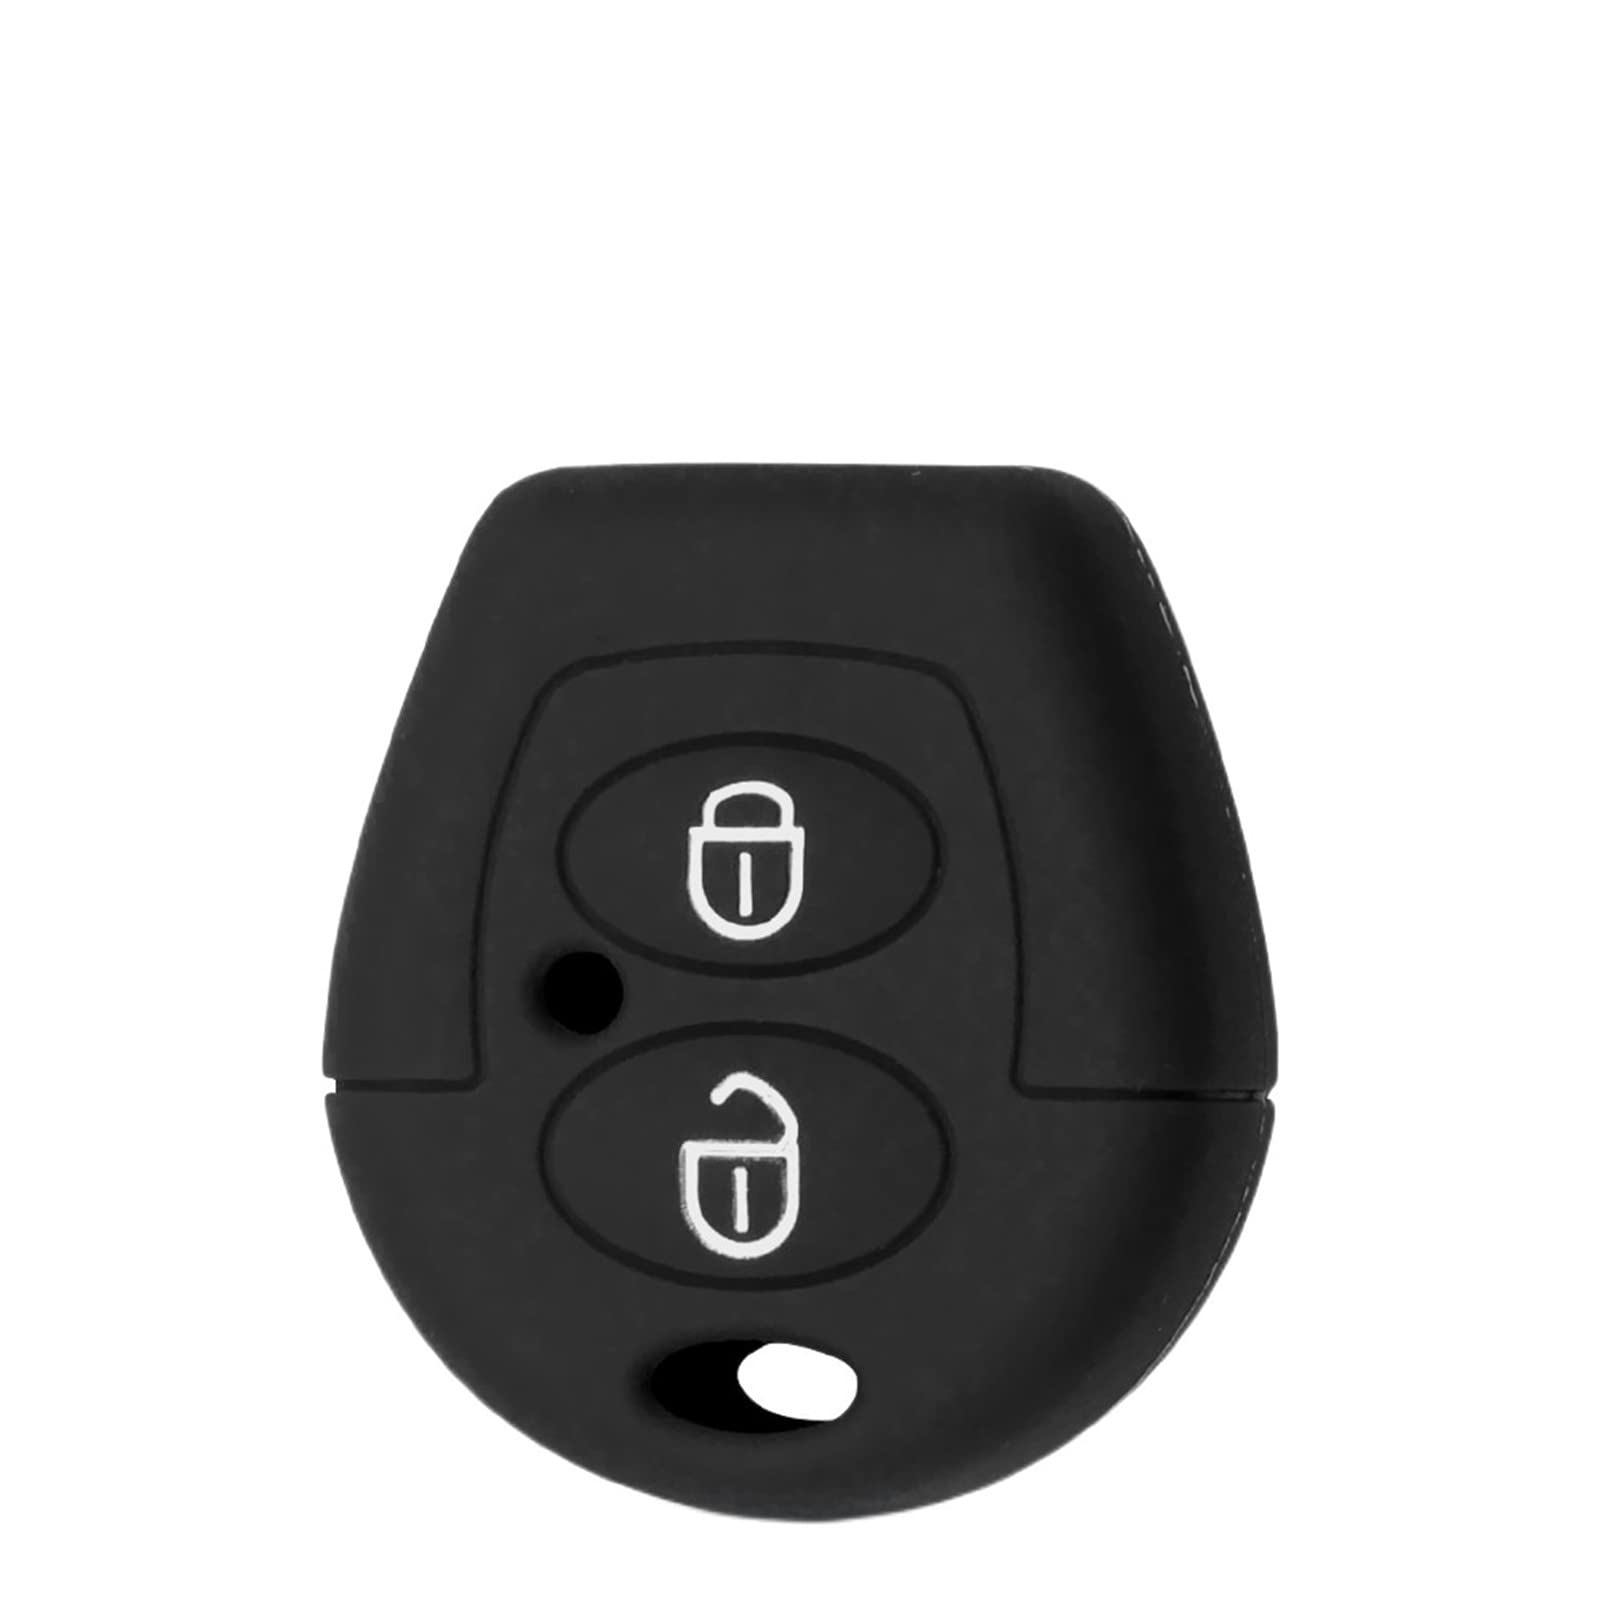 OTMIK Silikon Auto Schlüssel Abdeckung passend für VW Polo Golf Passat Bora Jetta Sharan Skoda Octavia Seat Leon Ibiza 2 Knöpfe Schlüsselhülle Zubehör (Schwarz) von OTMIK